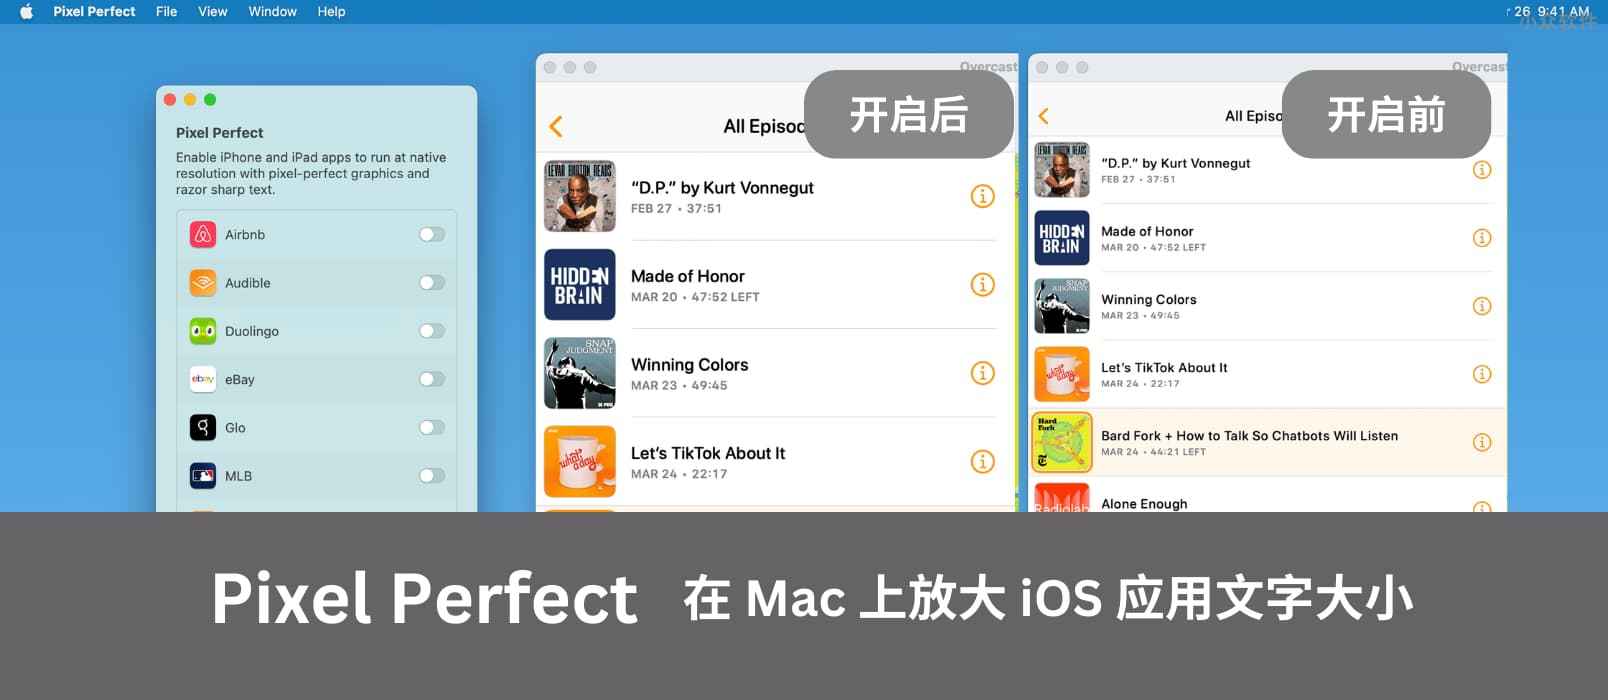 Pixel Perfect - 在 M1/M2 的 Mac 上放大 iOS 应用文字大小，告别不清晰和模糊